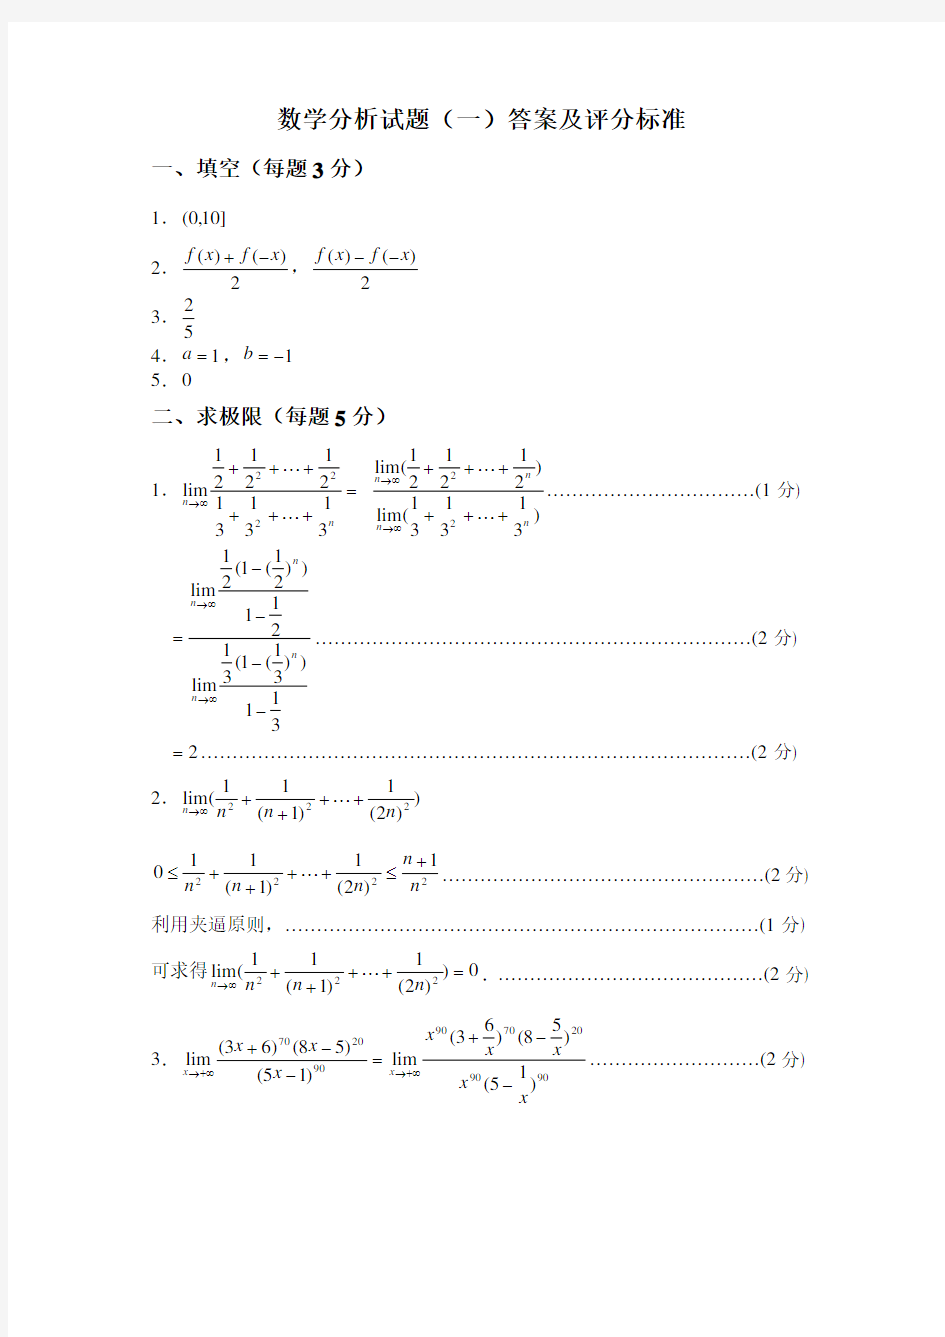 数学分析试题(一)答案及评分标准 - 陕西师范大学